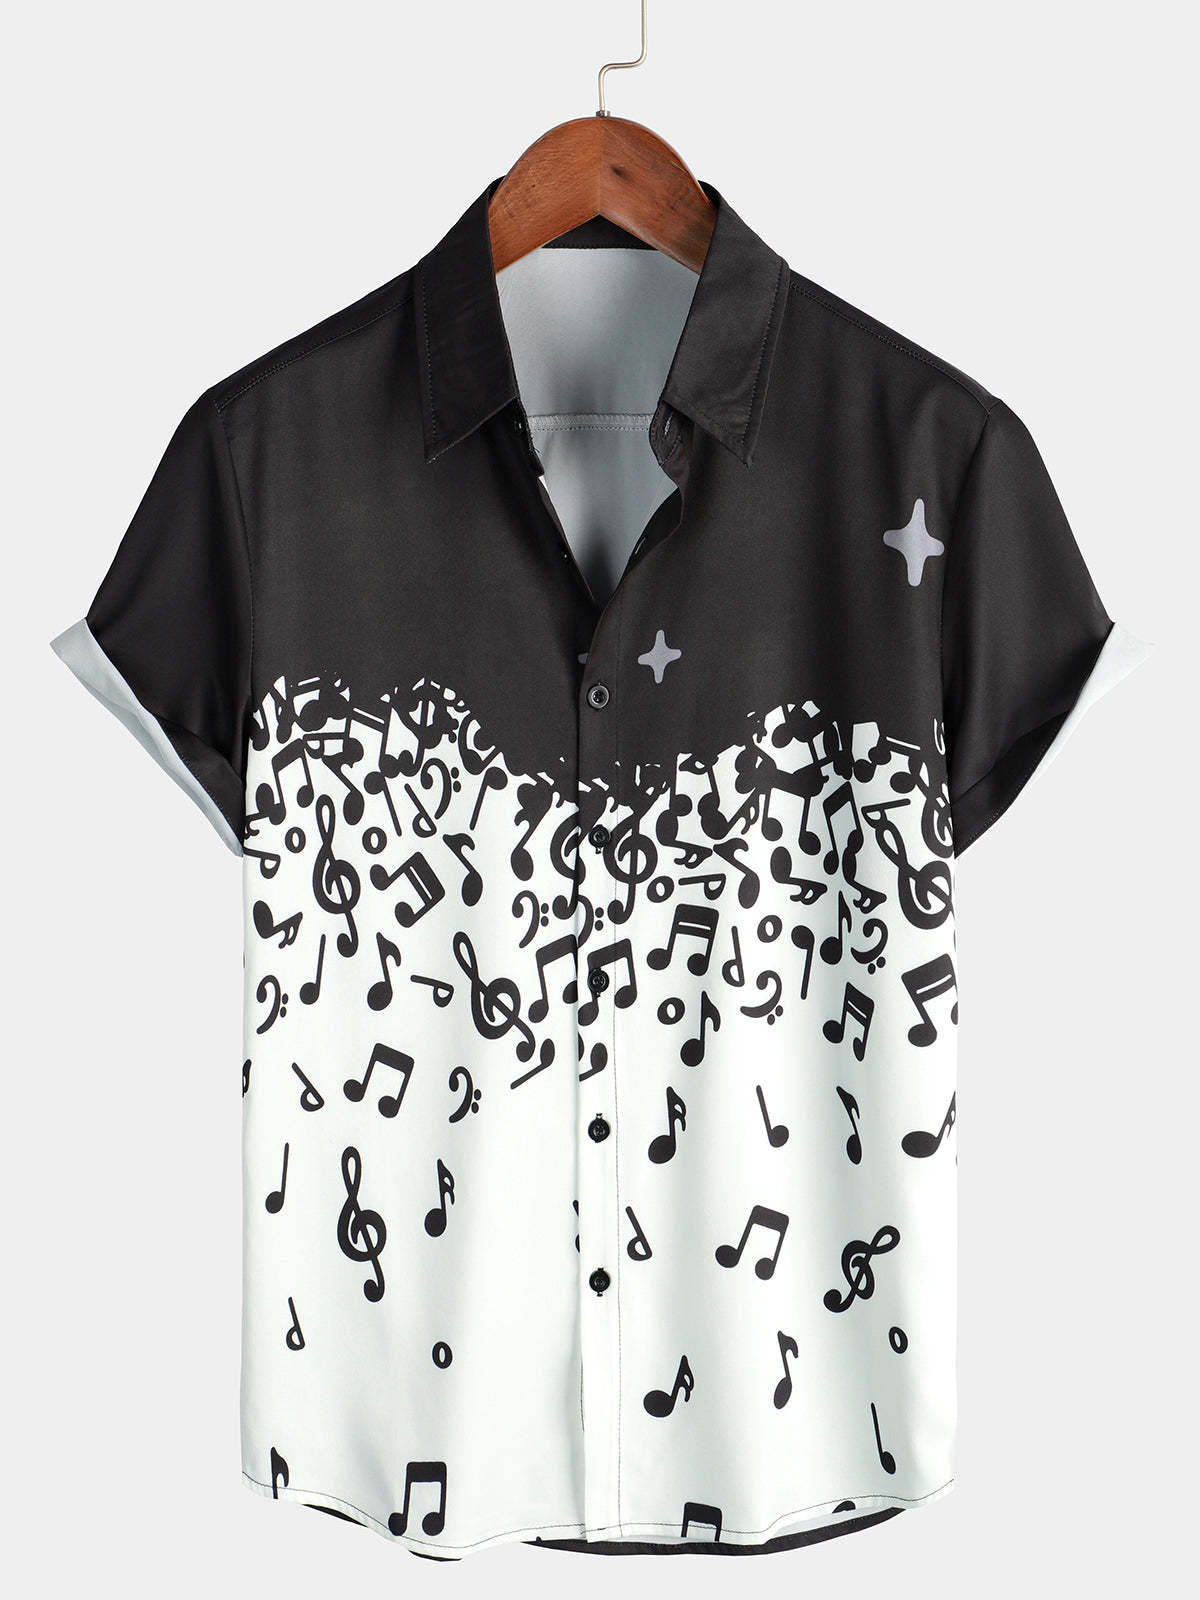 Men's Musical Note Rock & Roll Print Musicians Casual Short Sleeve Shirt